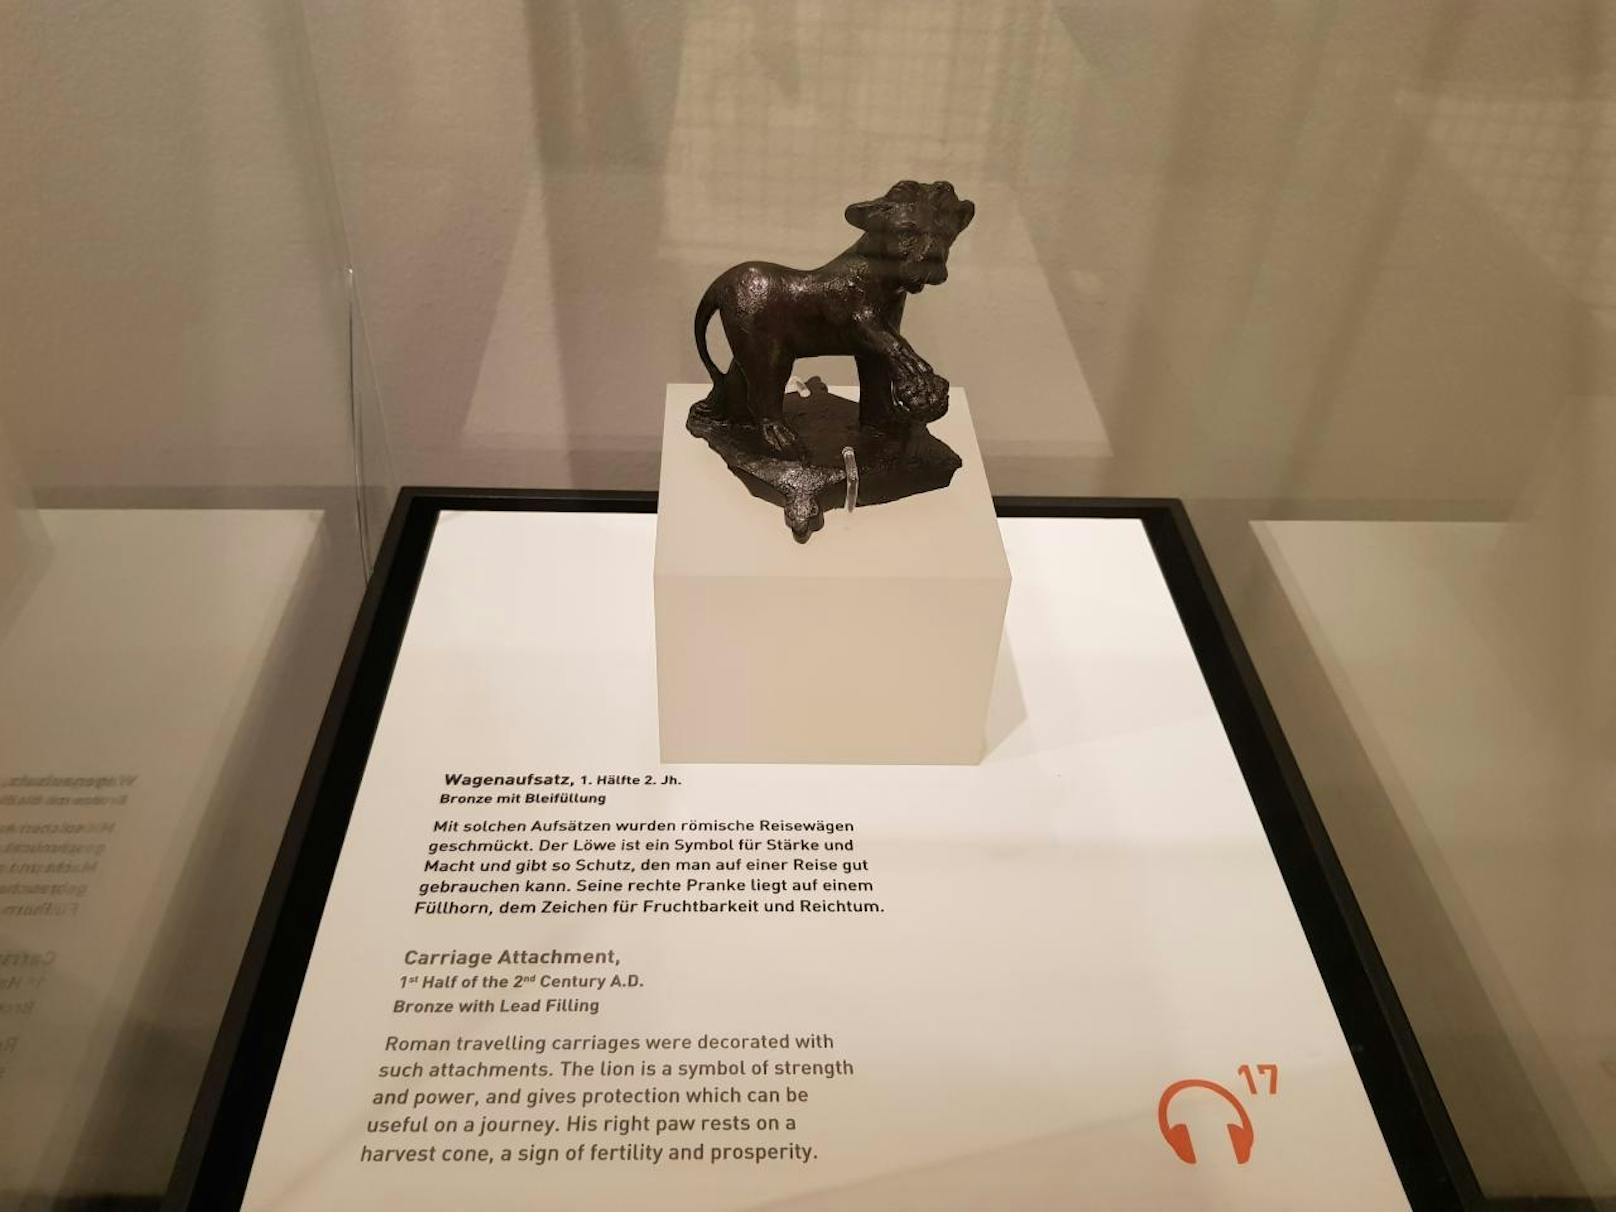 Wie es sich für das Römermuseum gehört, werden auch Funde aus dem Römerlager Vindobona gezeigt, etwa dieser Wagenaufsatz in Form eines Löwen.